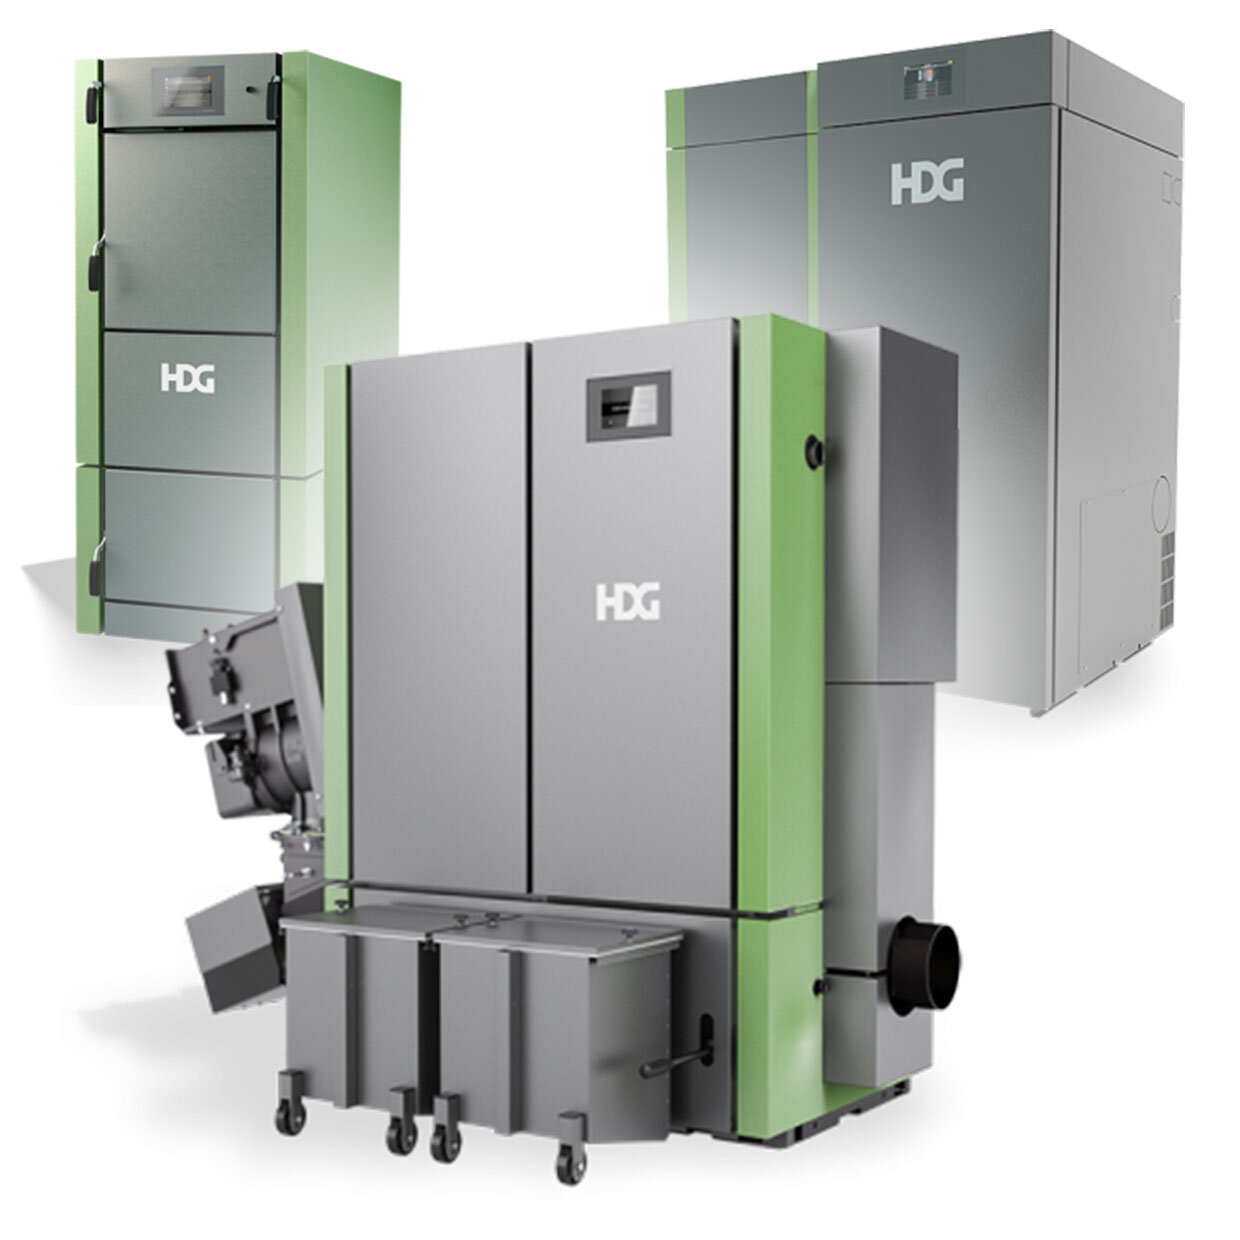 HDG all Biomass boiler models